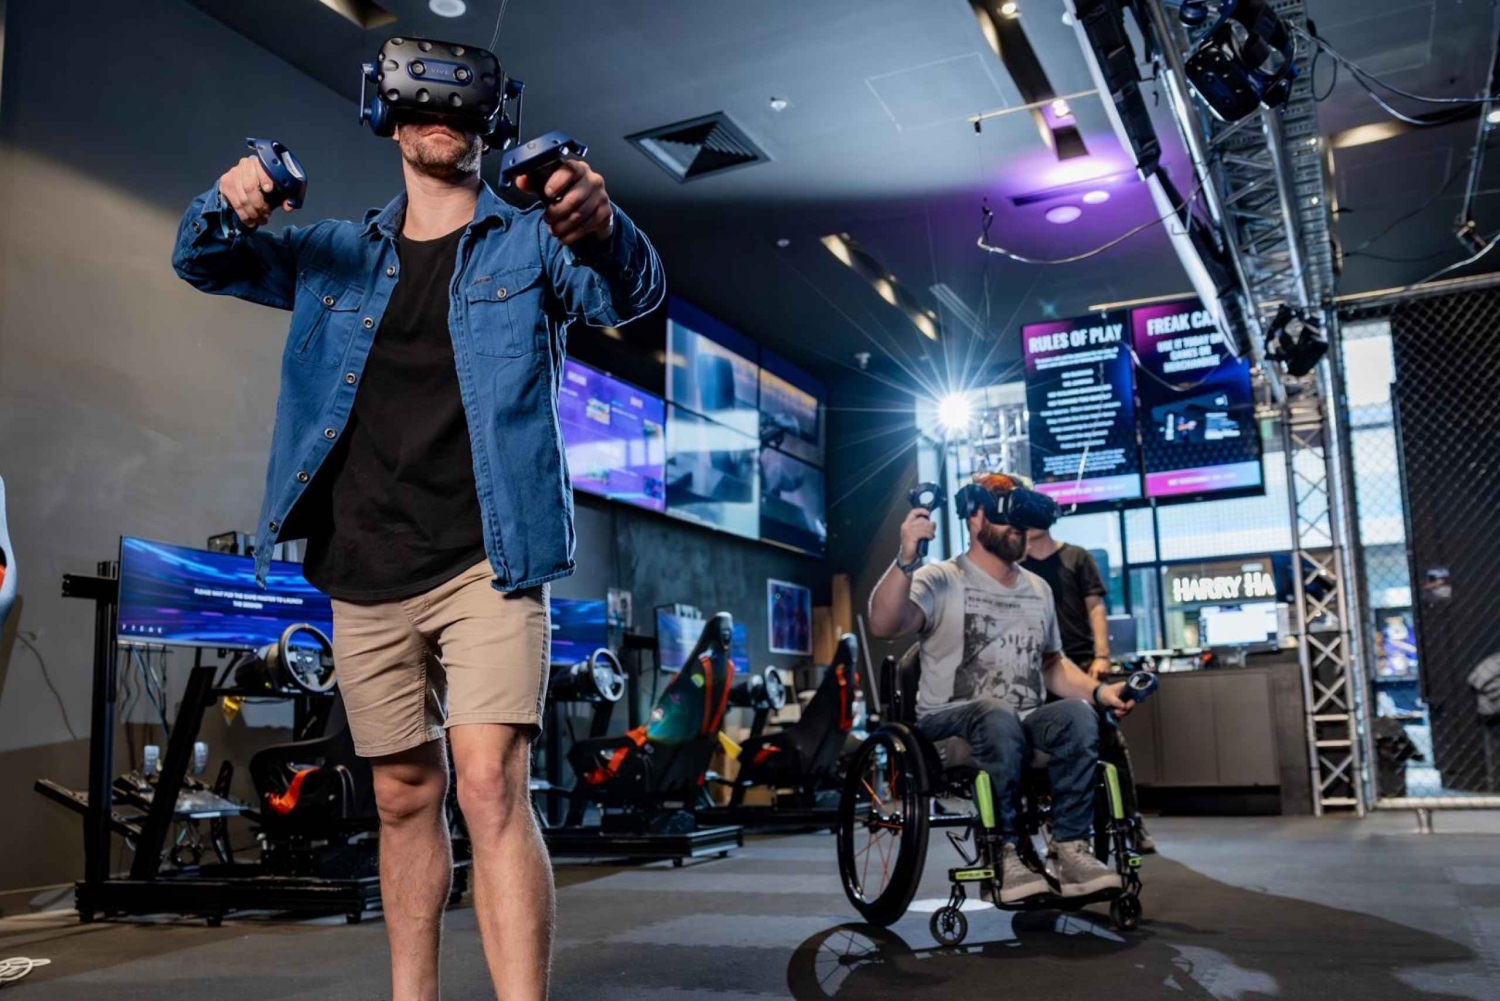 Penrith: VR Escape Room ervaring voor 2